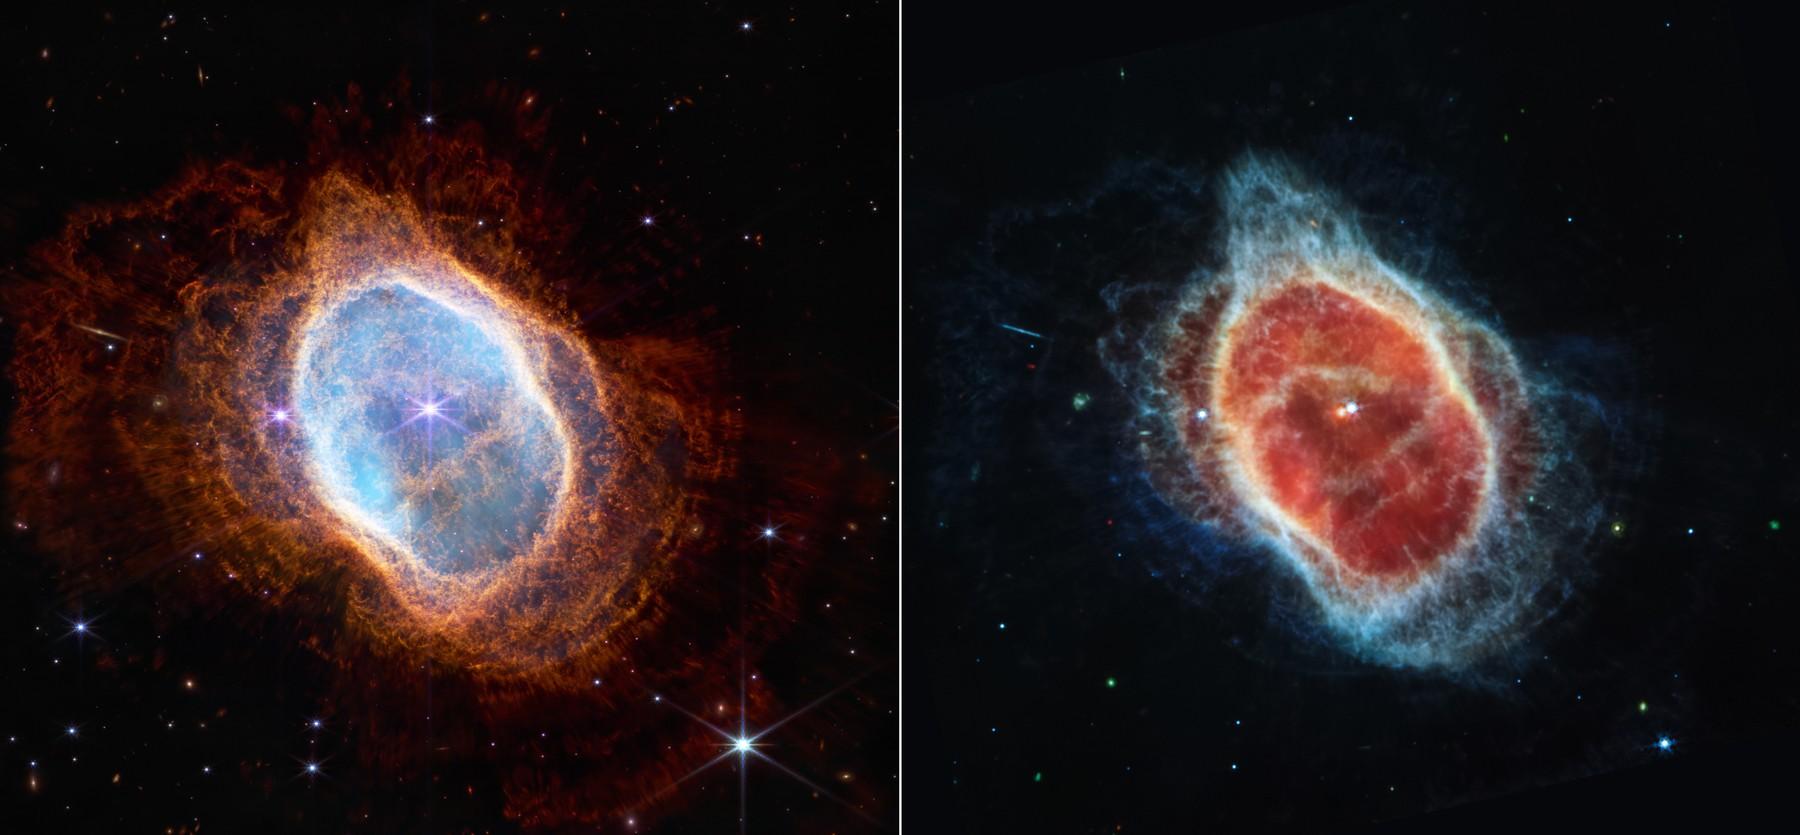 NASA a publicat Imagini uluitoare surprinse de cel mai puternic telescop spaţial, James Webb